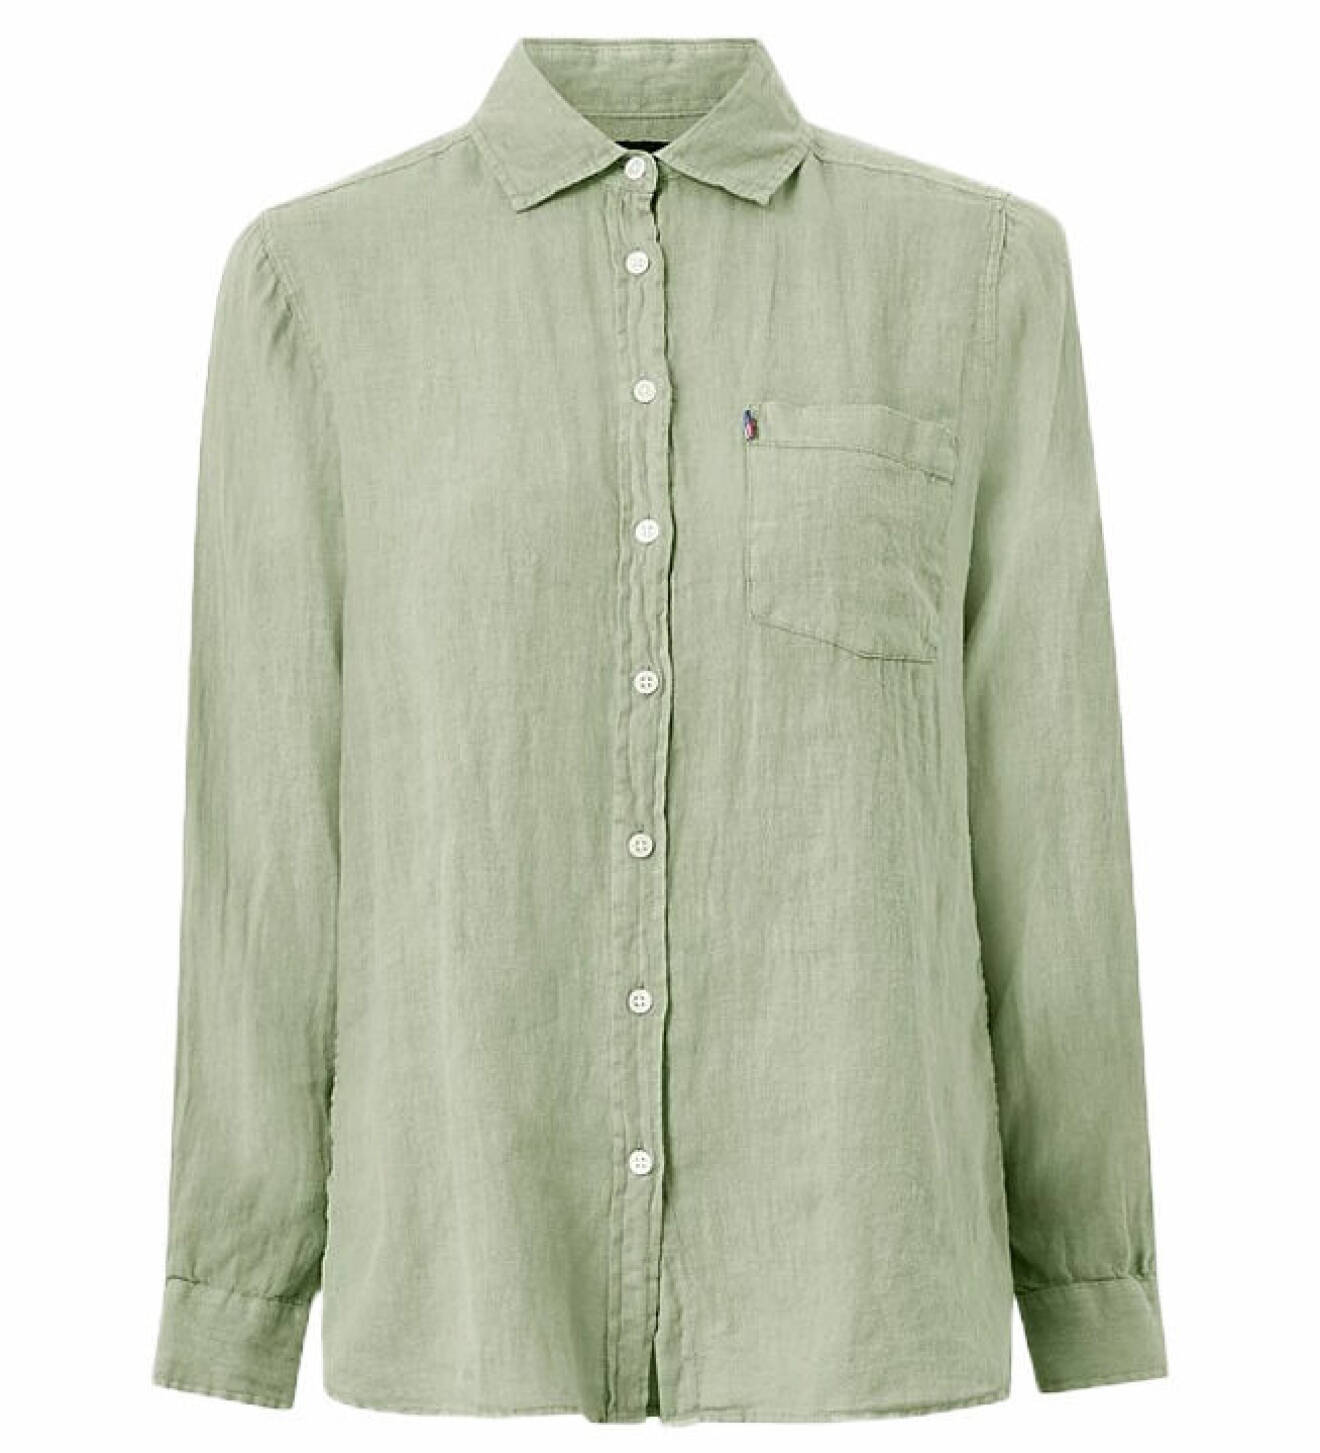 grön skjorta i linne från lexington